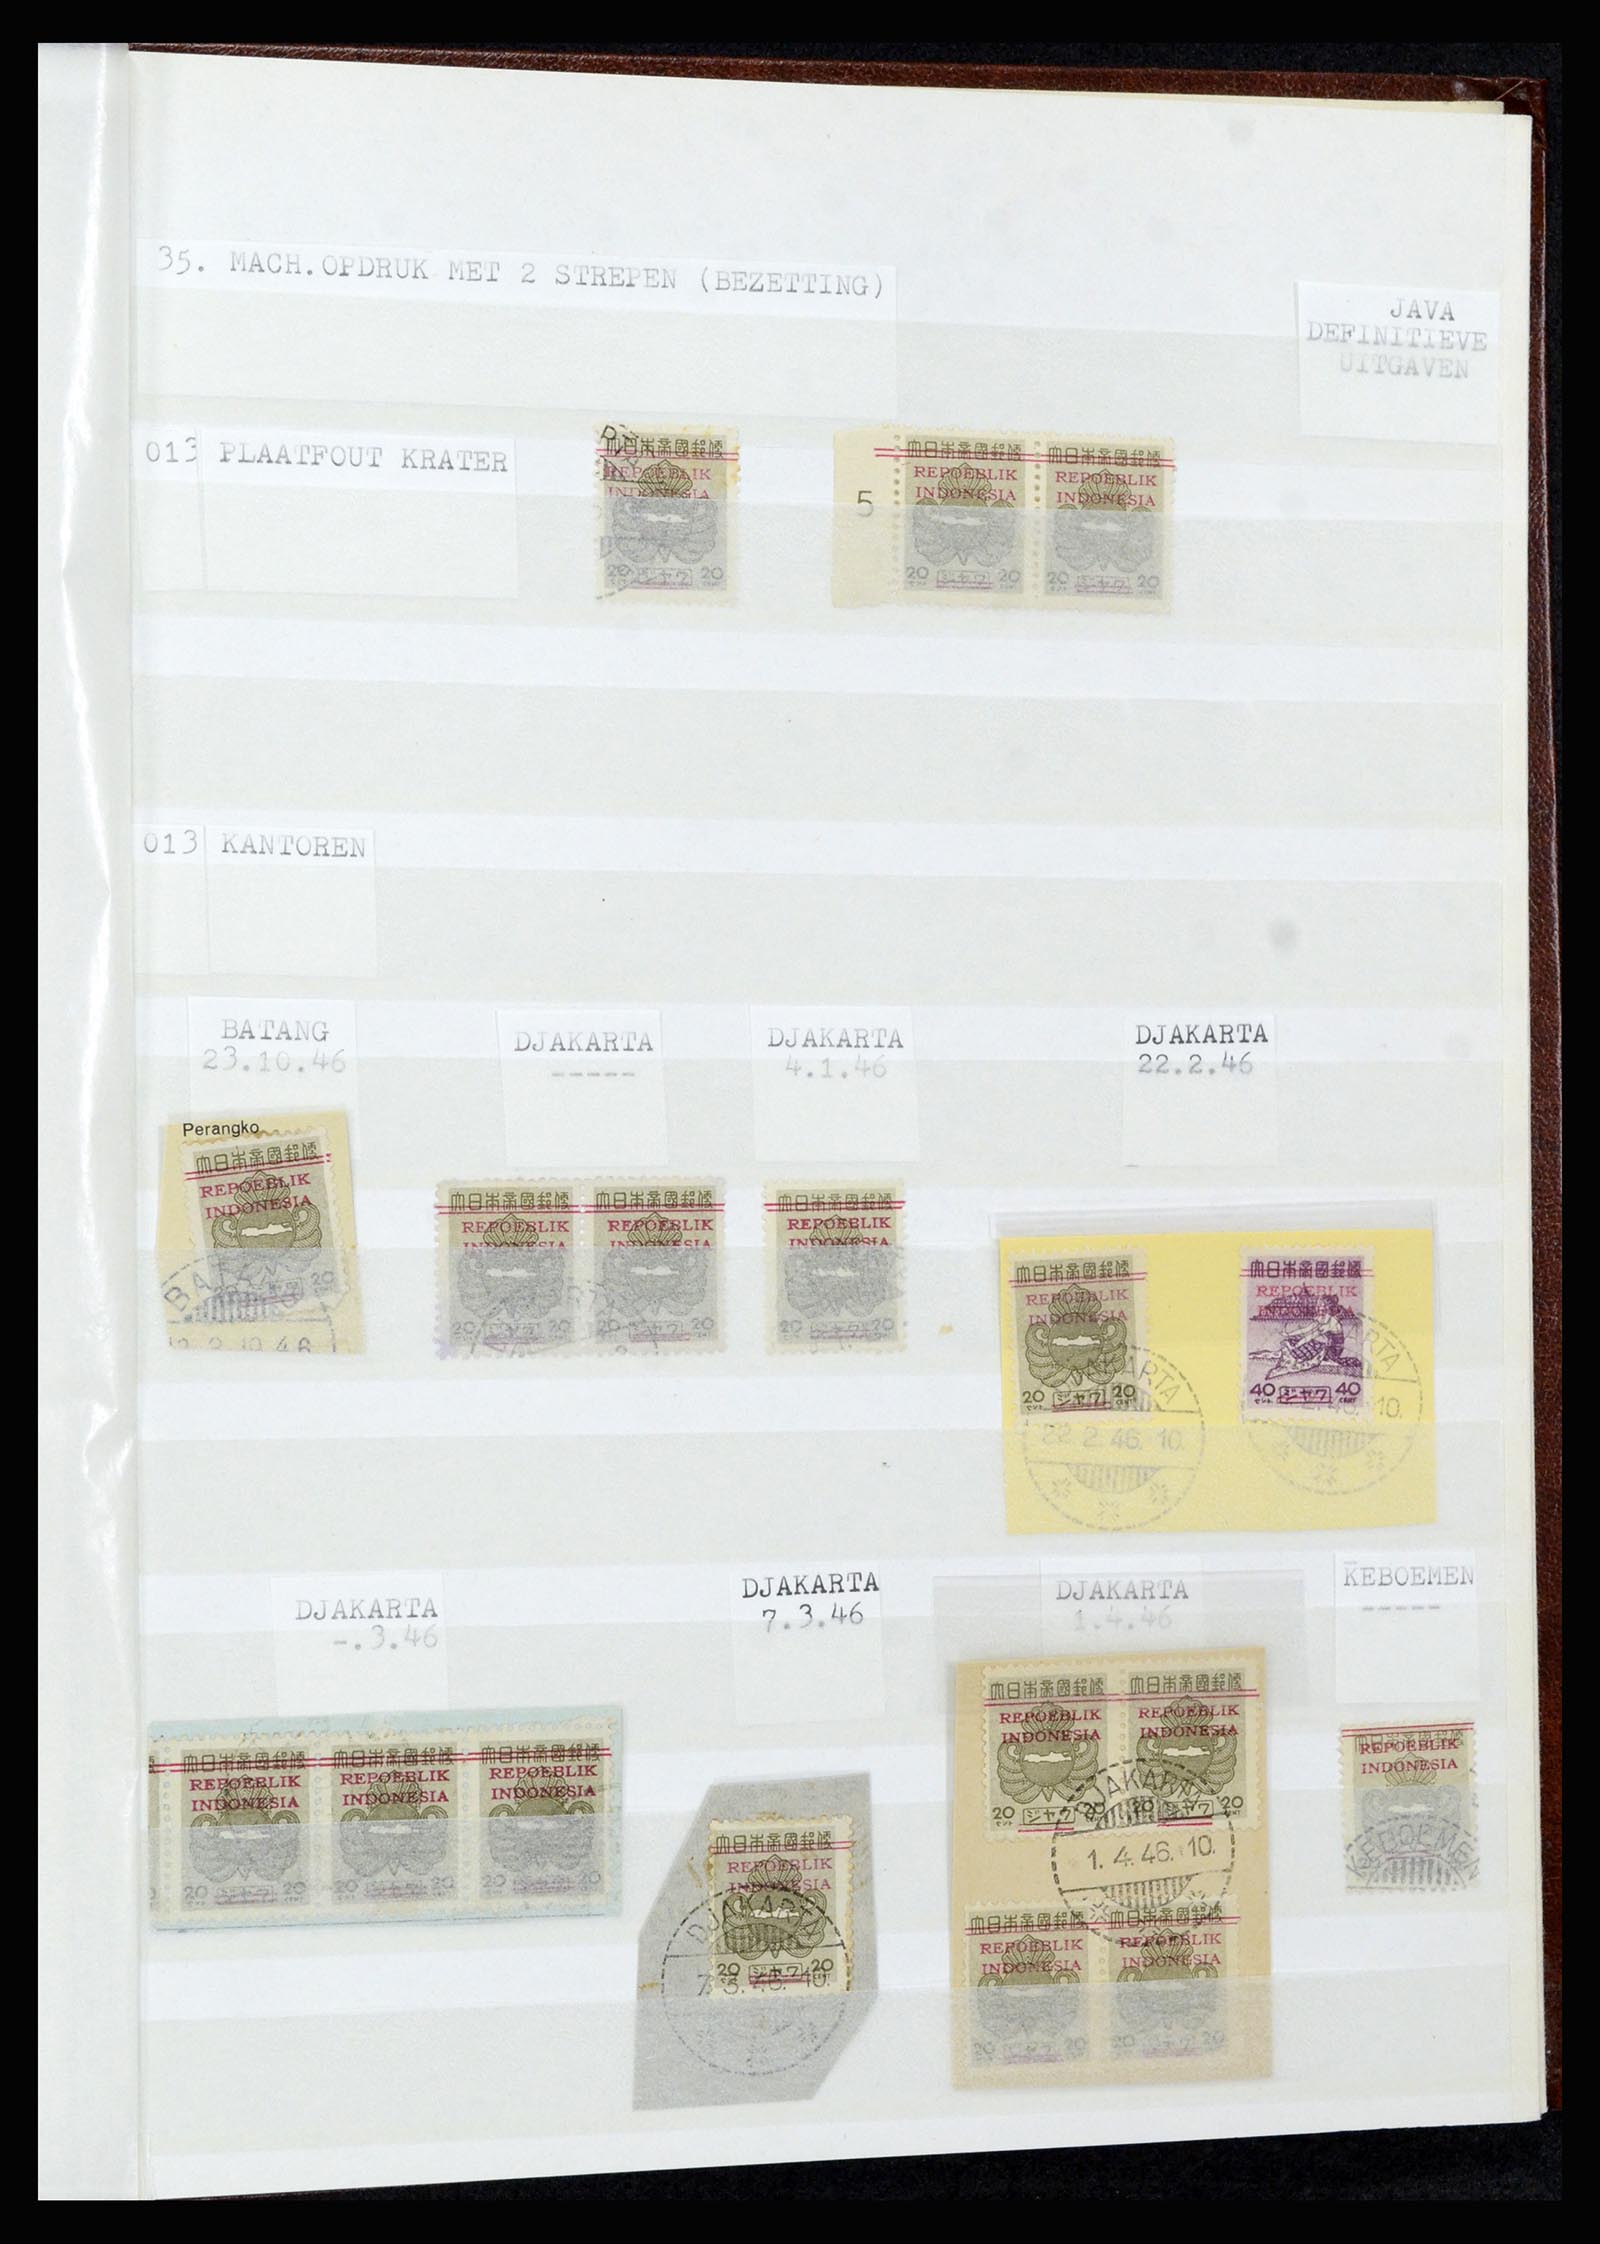 36742 328 - Stamp collection 36742 Dutch Indies interim period 1945-1949.